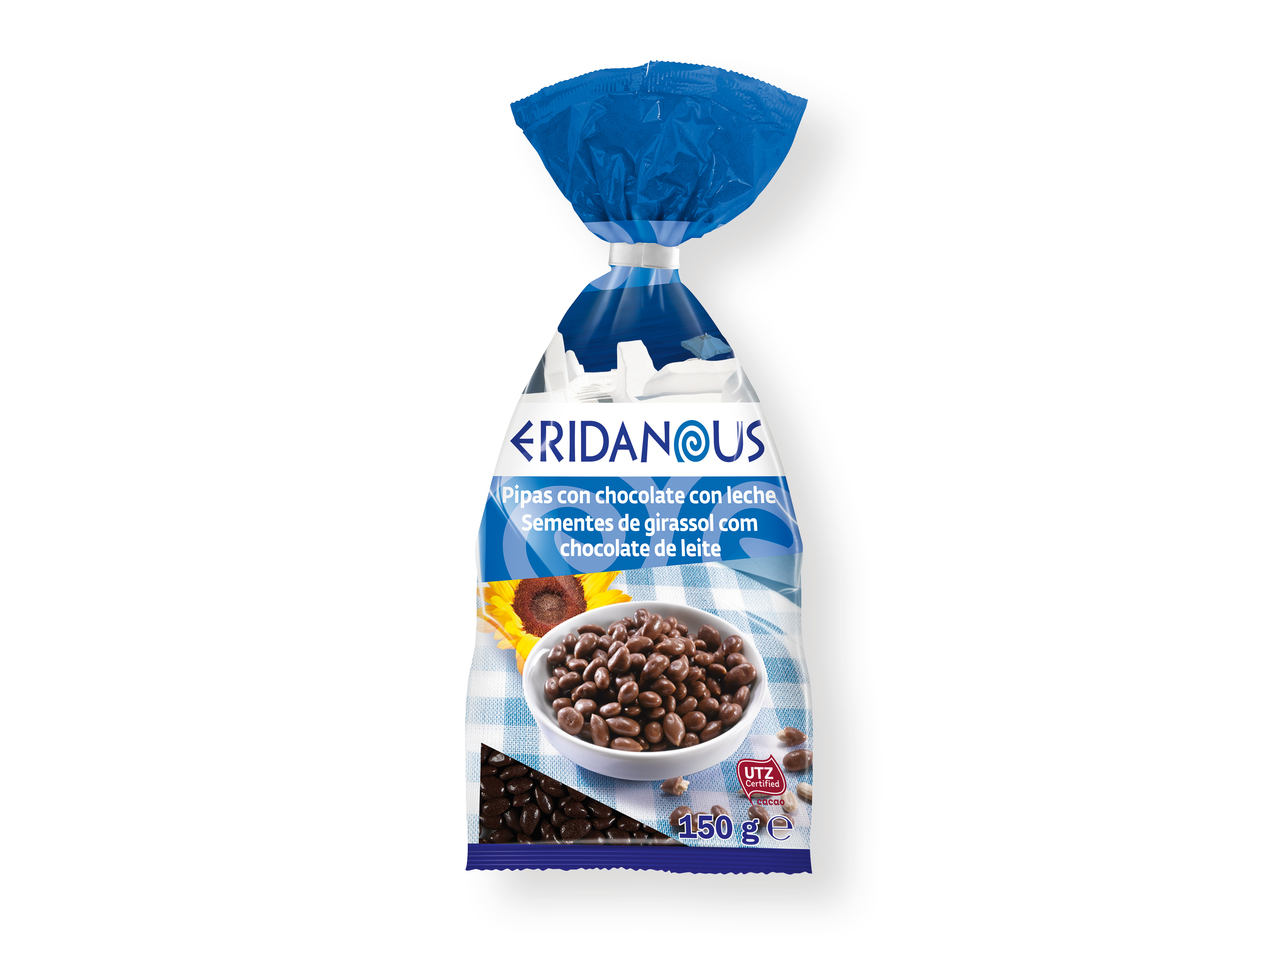 'Eridanous(R)' Pipas bañadas en chocolate